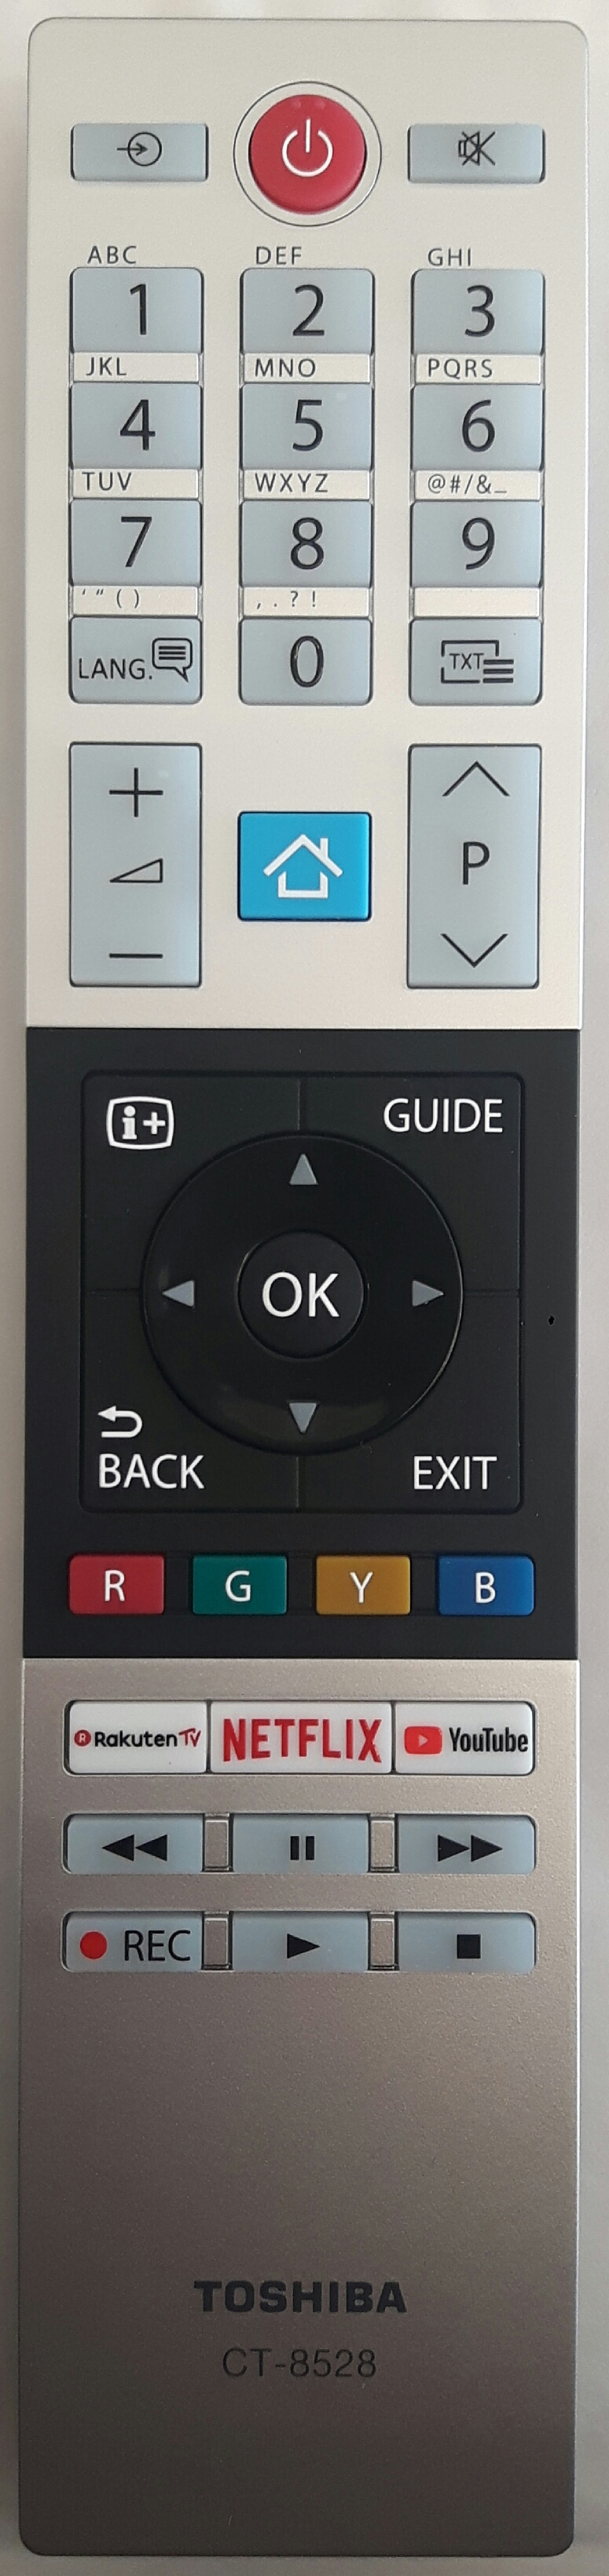 TOSHIBA 10120503 Remote Control Original 